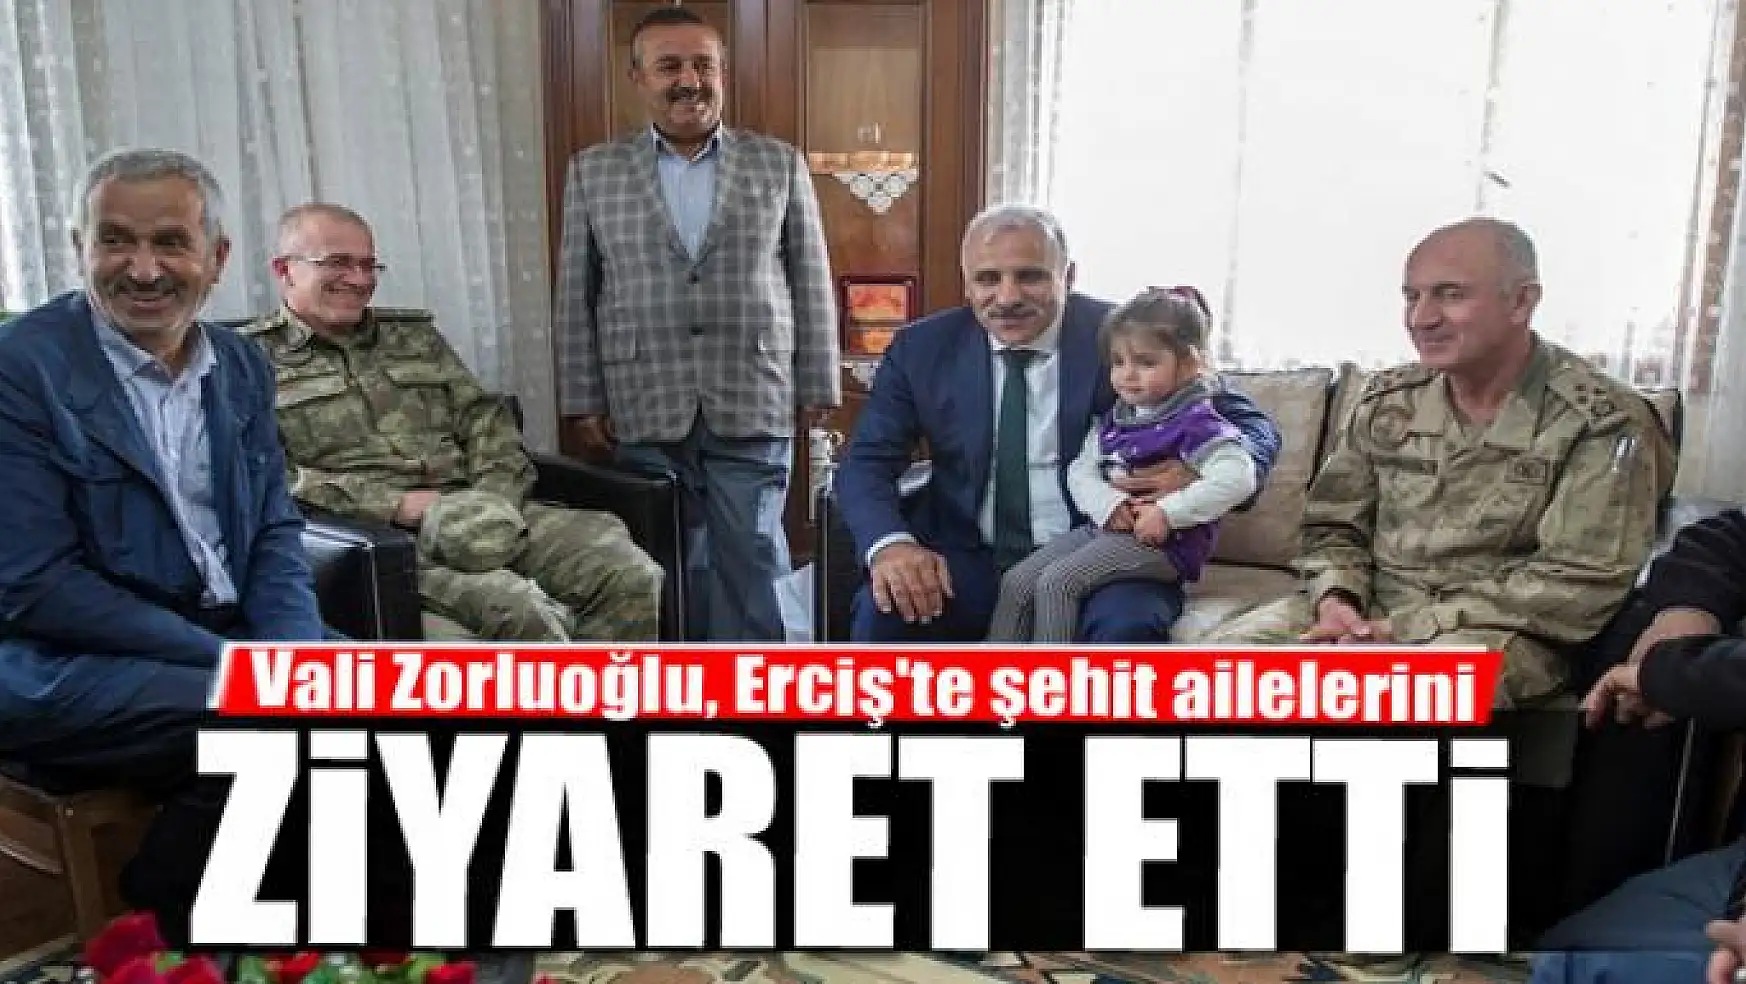 Vali Zorluoğlu, Erciş'te şehit ailelerini ziyaret etti